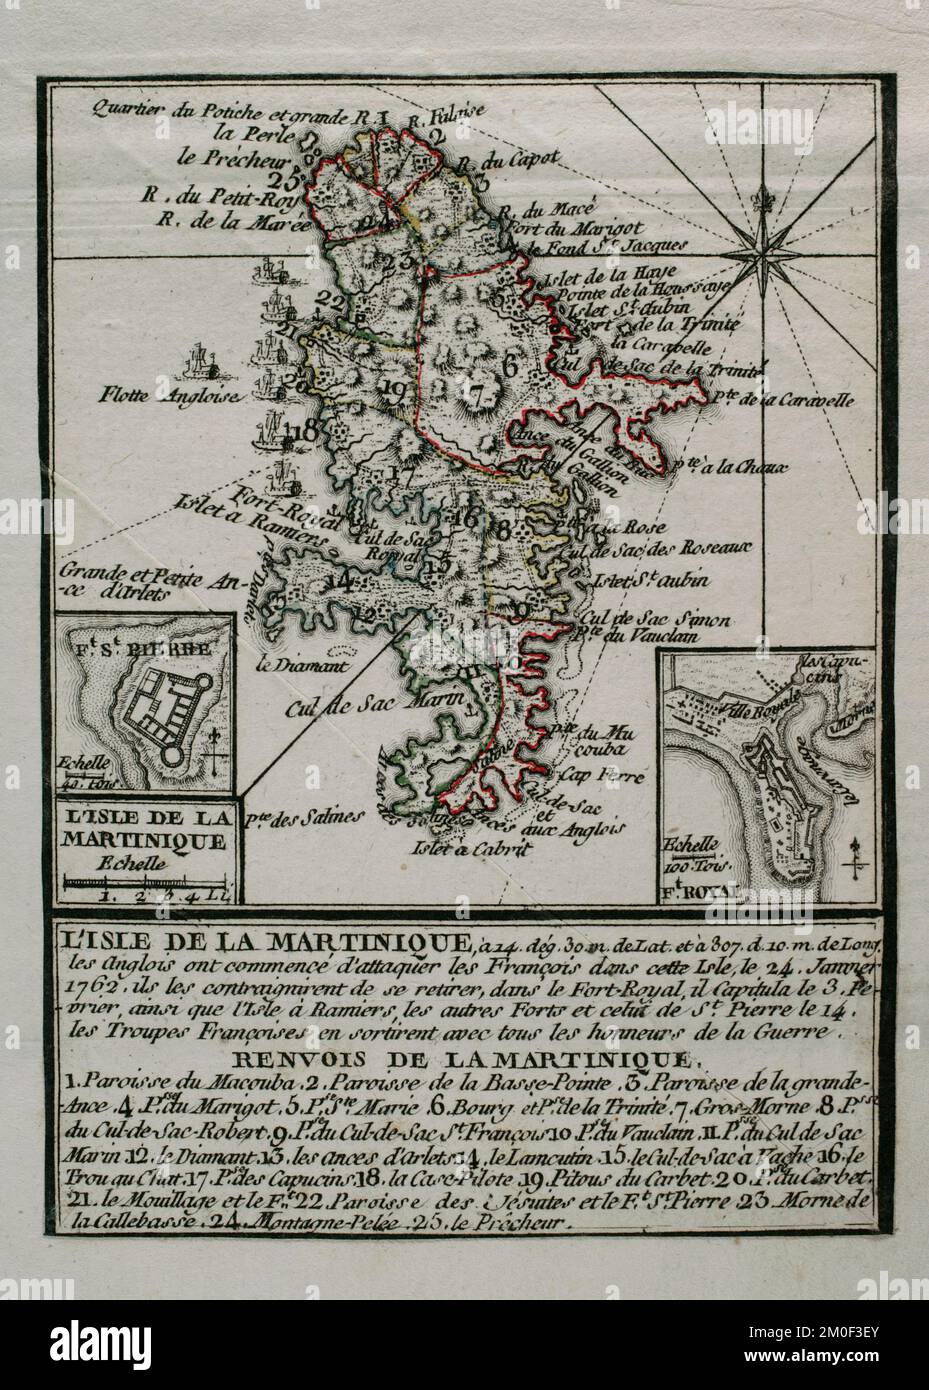 Martinique, 1762. Insel, die von den Briten während des Siebenjährigen Krieges (1756-1763) von den Franzosen eingenommen wurde und von 1762 bis 1763 in ihrem Besitz blieb. Die Briten begannen am 24. Januar 1762, die Franzosen auf der Insel anzugreifen und zwangen sie, sich in die Hauptstadt Fort-Royal zurückzuziehen. Die Franzosen kapitulierten am 3. Februar. Am 12. Februar stand die ganze Insel unter britischer Kontrolle. Die Karte wurde 1765 vom Kartografen Jean de Beaurain (1696-1771) als Illustration seiner Großen Karte Deutschlands mit den Ereignissen während des Siebenjährigen Krieges veröffentlicht. Alliierte Armee in Rot und französische Armee in Bl Stockfoto